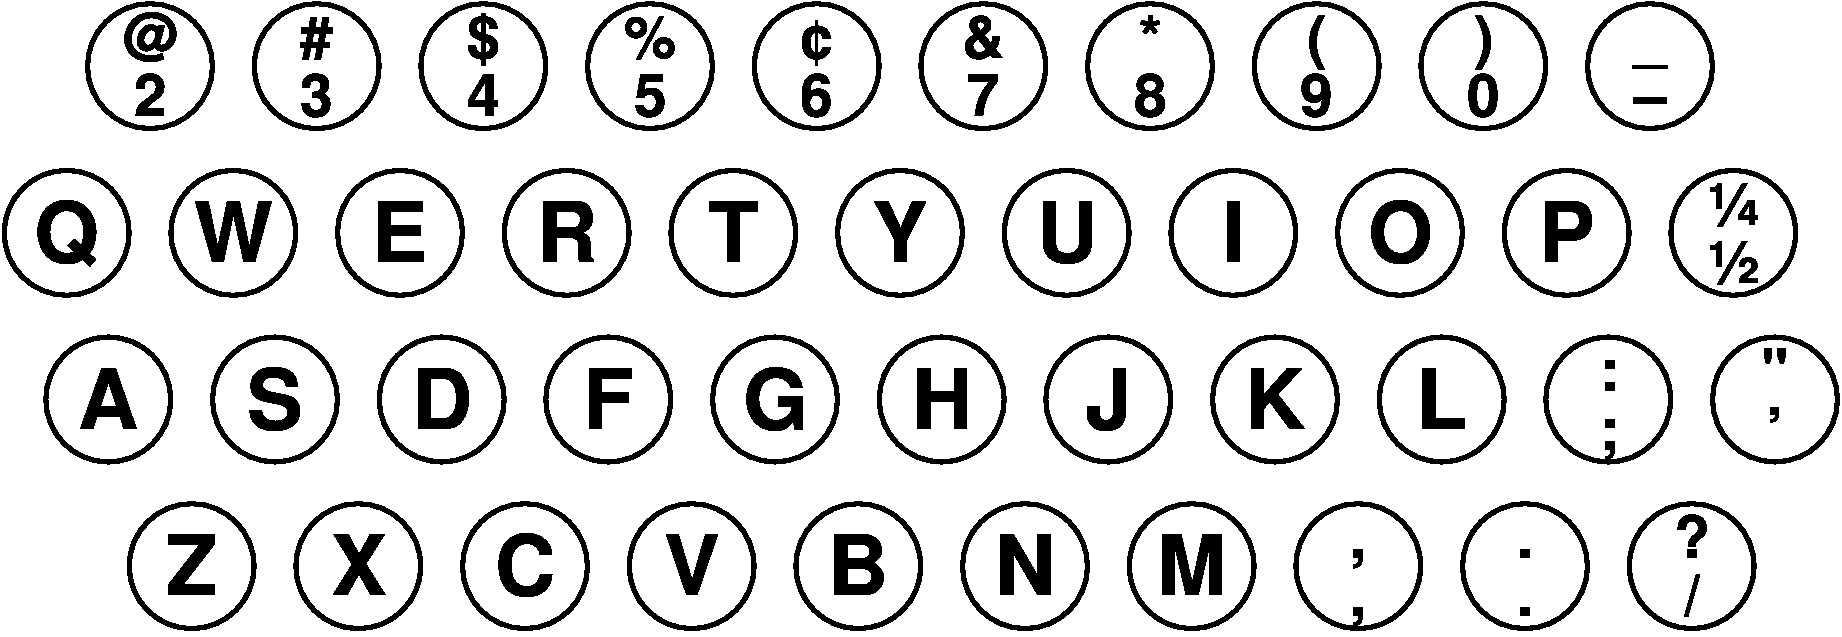 1938年1月時点の「IBM Electromatic」のキー配列